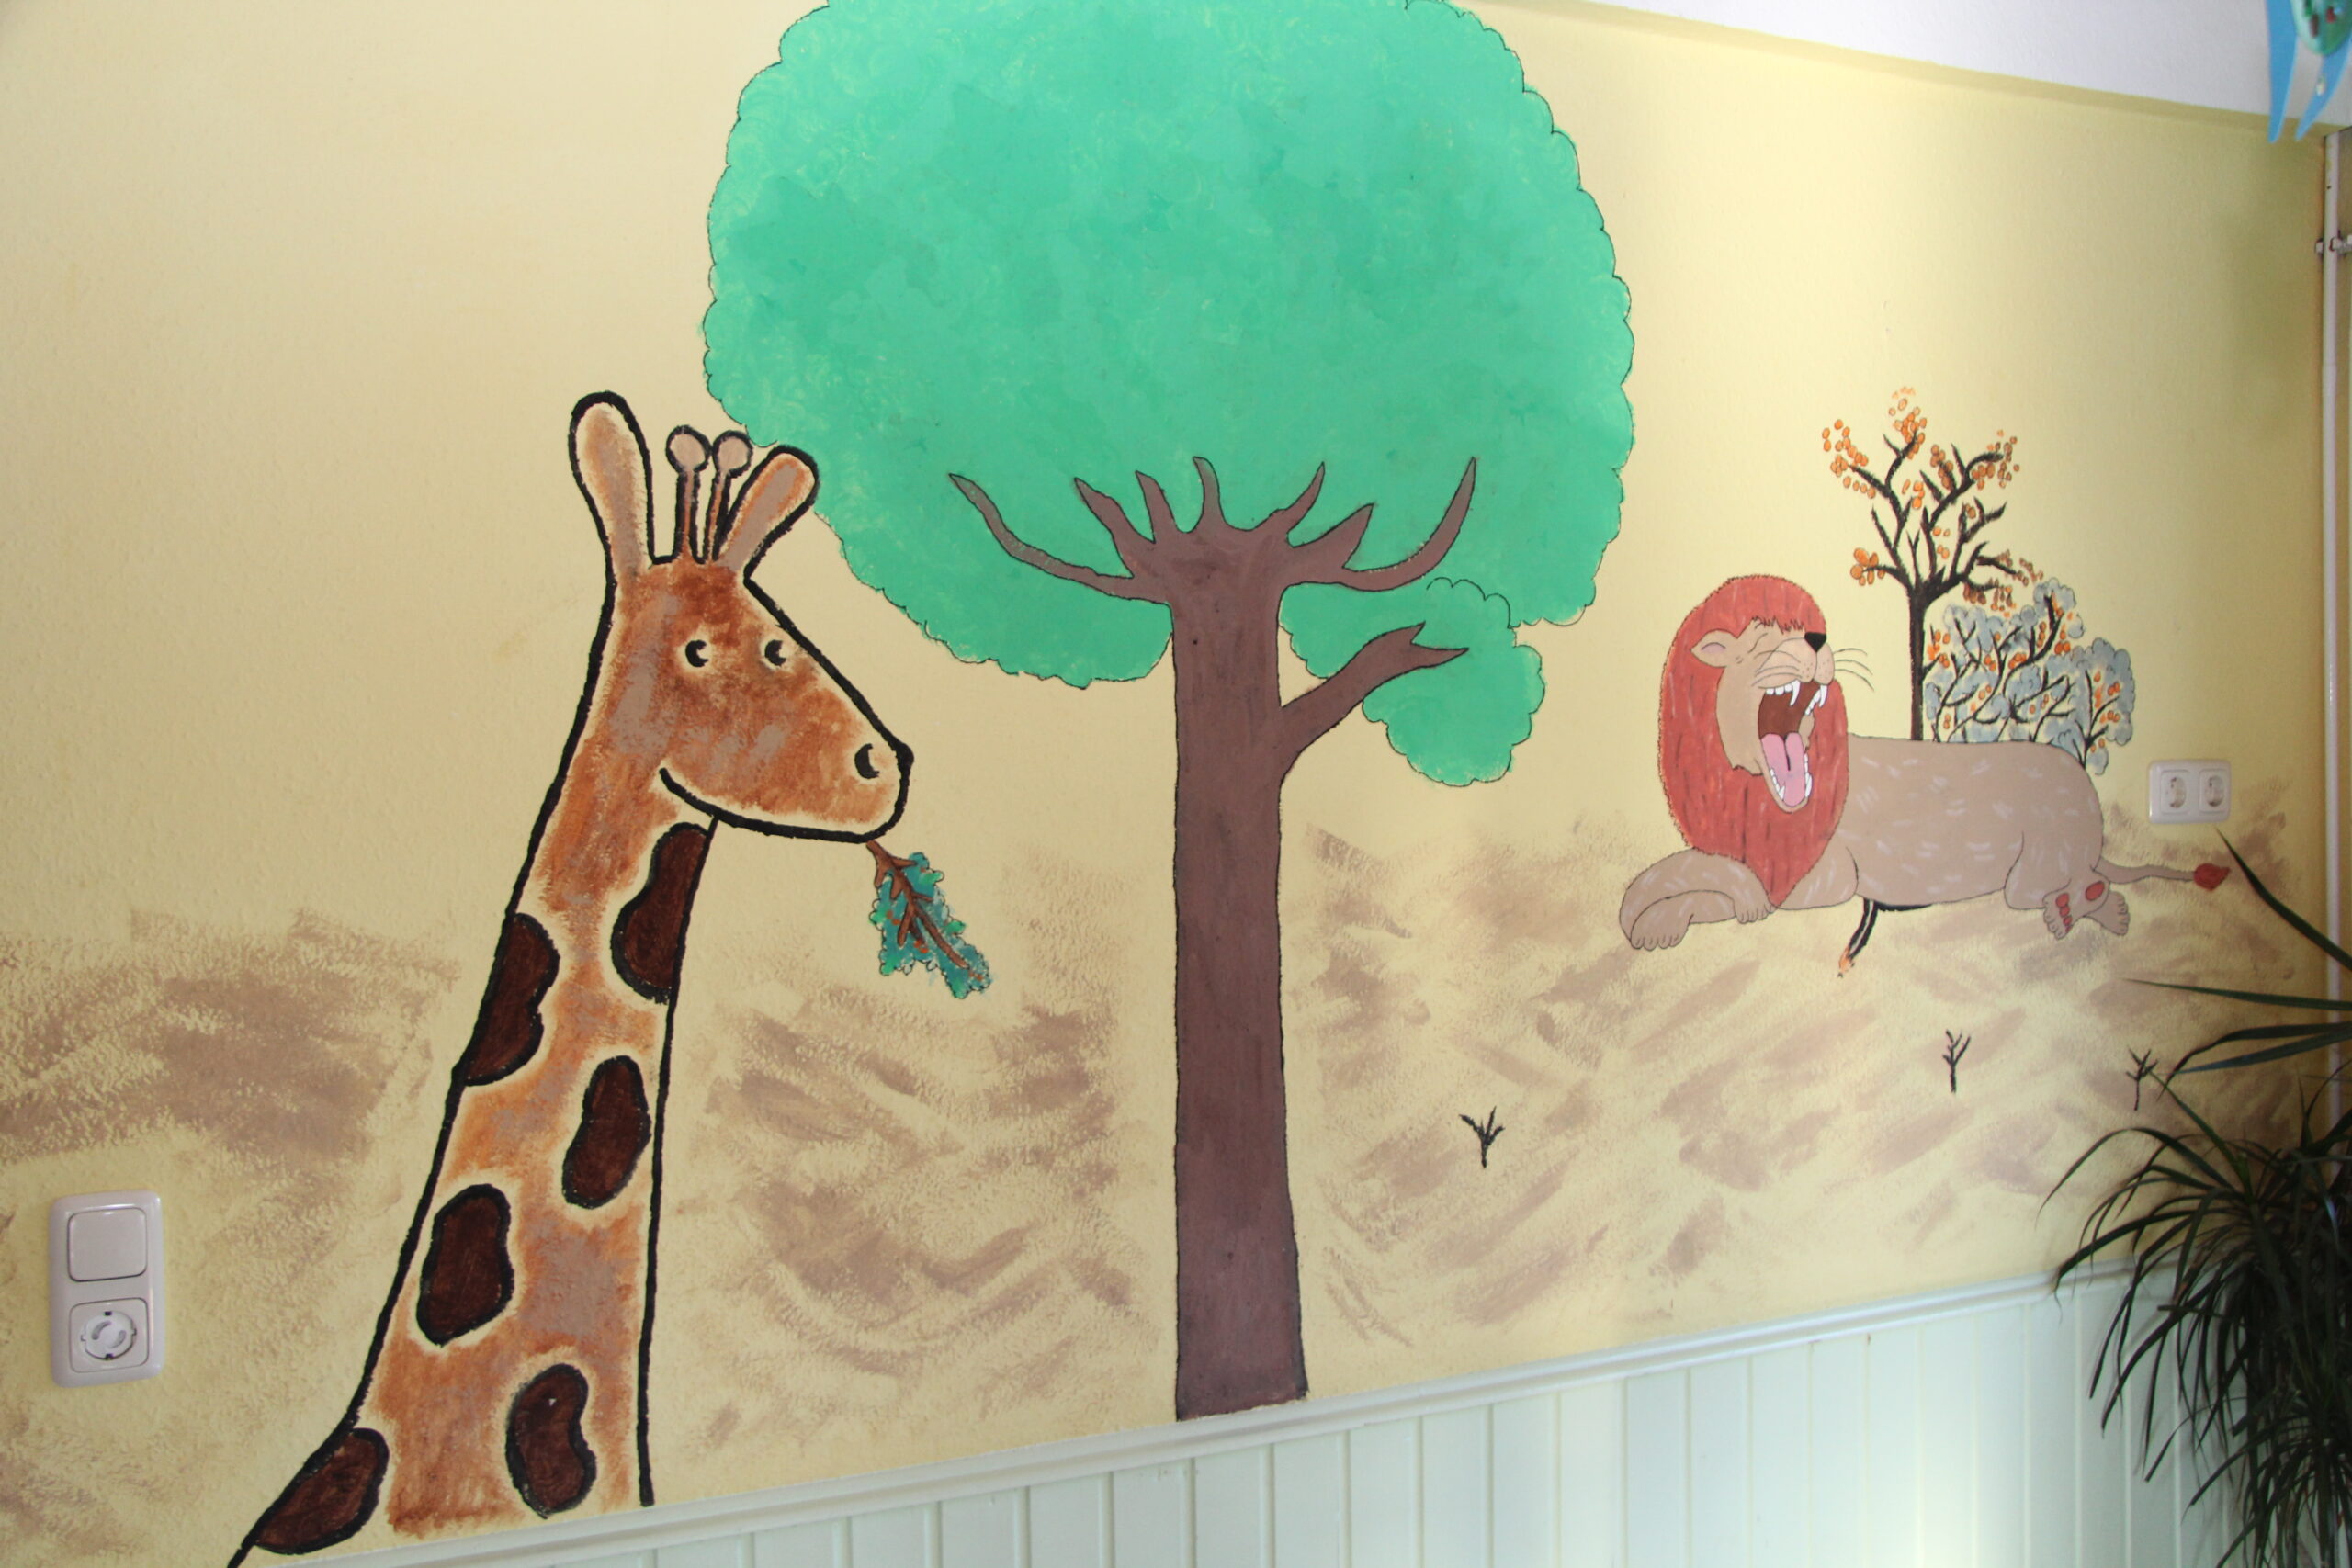 Man sieht im Raum eine gemalte Wand im Raum mit einer Giraffe, einem Löwen und einem Baum